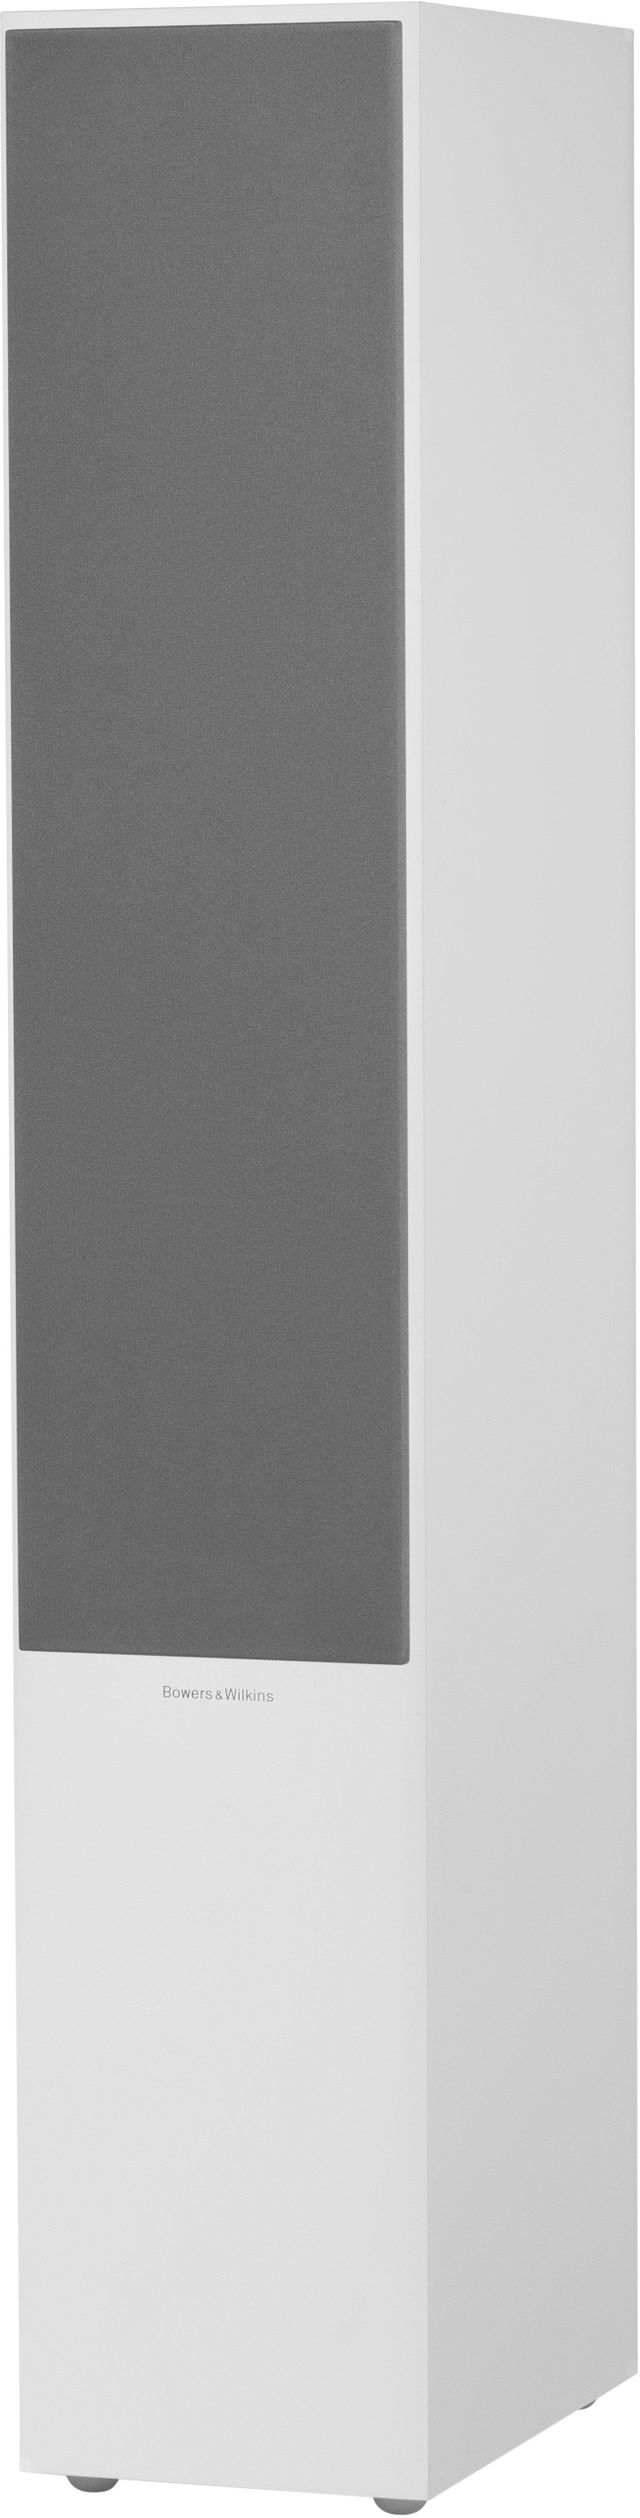 Bowers & Wilkins Satin White 704 S2 Floorstanding Speaker 1